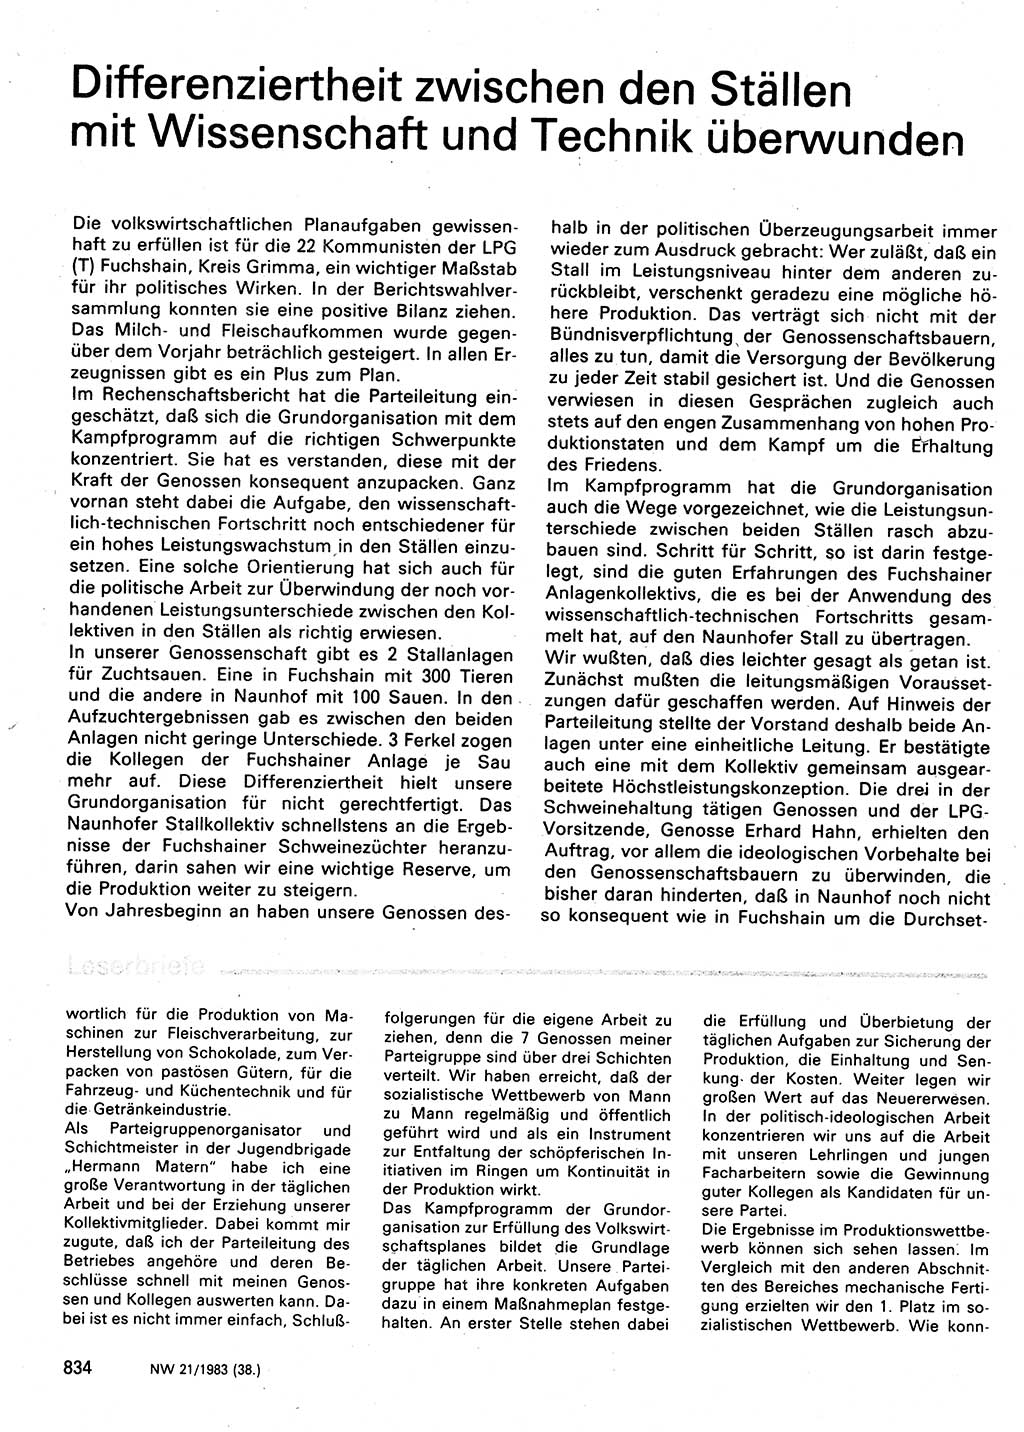 Neuer Weg (NW), Organ des Zentralkomitees (ZK) der SED (Sozialistische Einheitspartei Deutschlands) für Fragen des Parteilebens, 38. Jahrgang [Deutsche Demokratische Republik (DDR)] 1983, Seite 834 (NW ZK SED DDR 1983, S. 834)